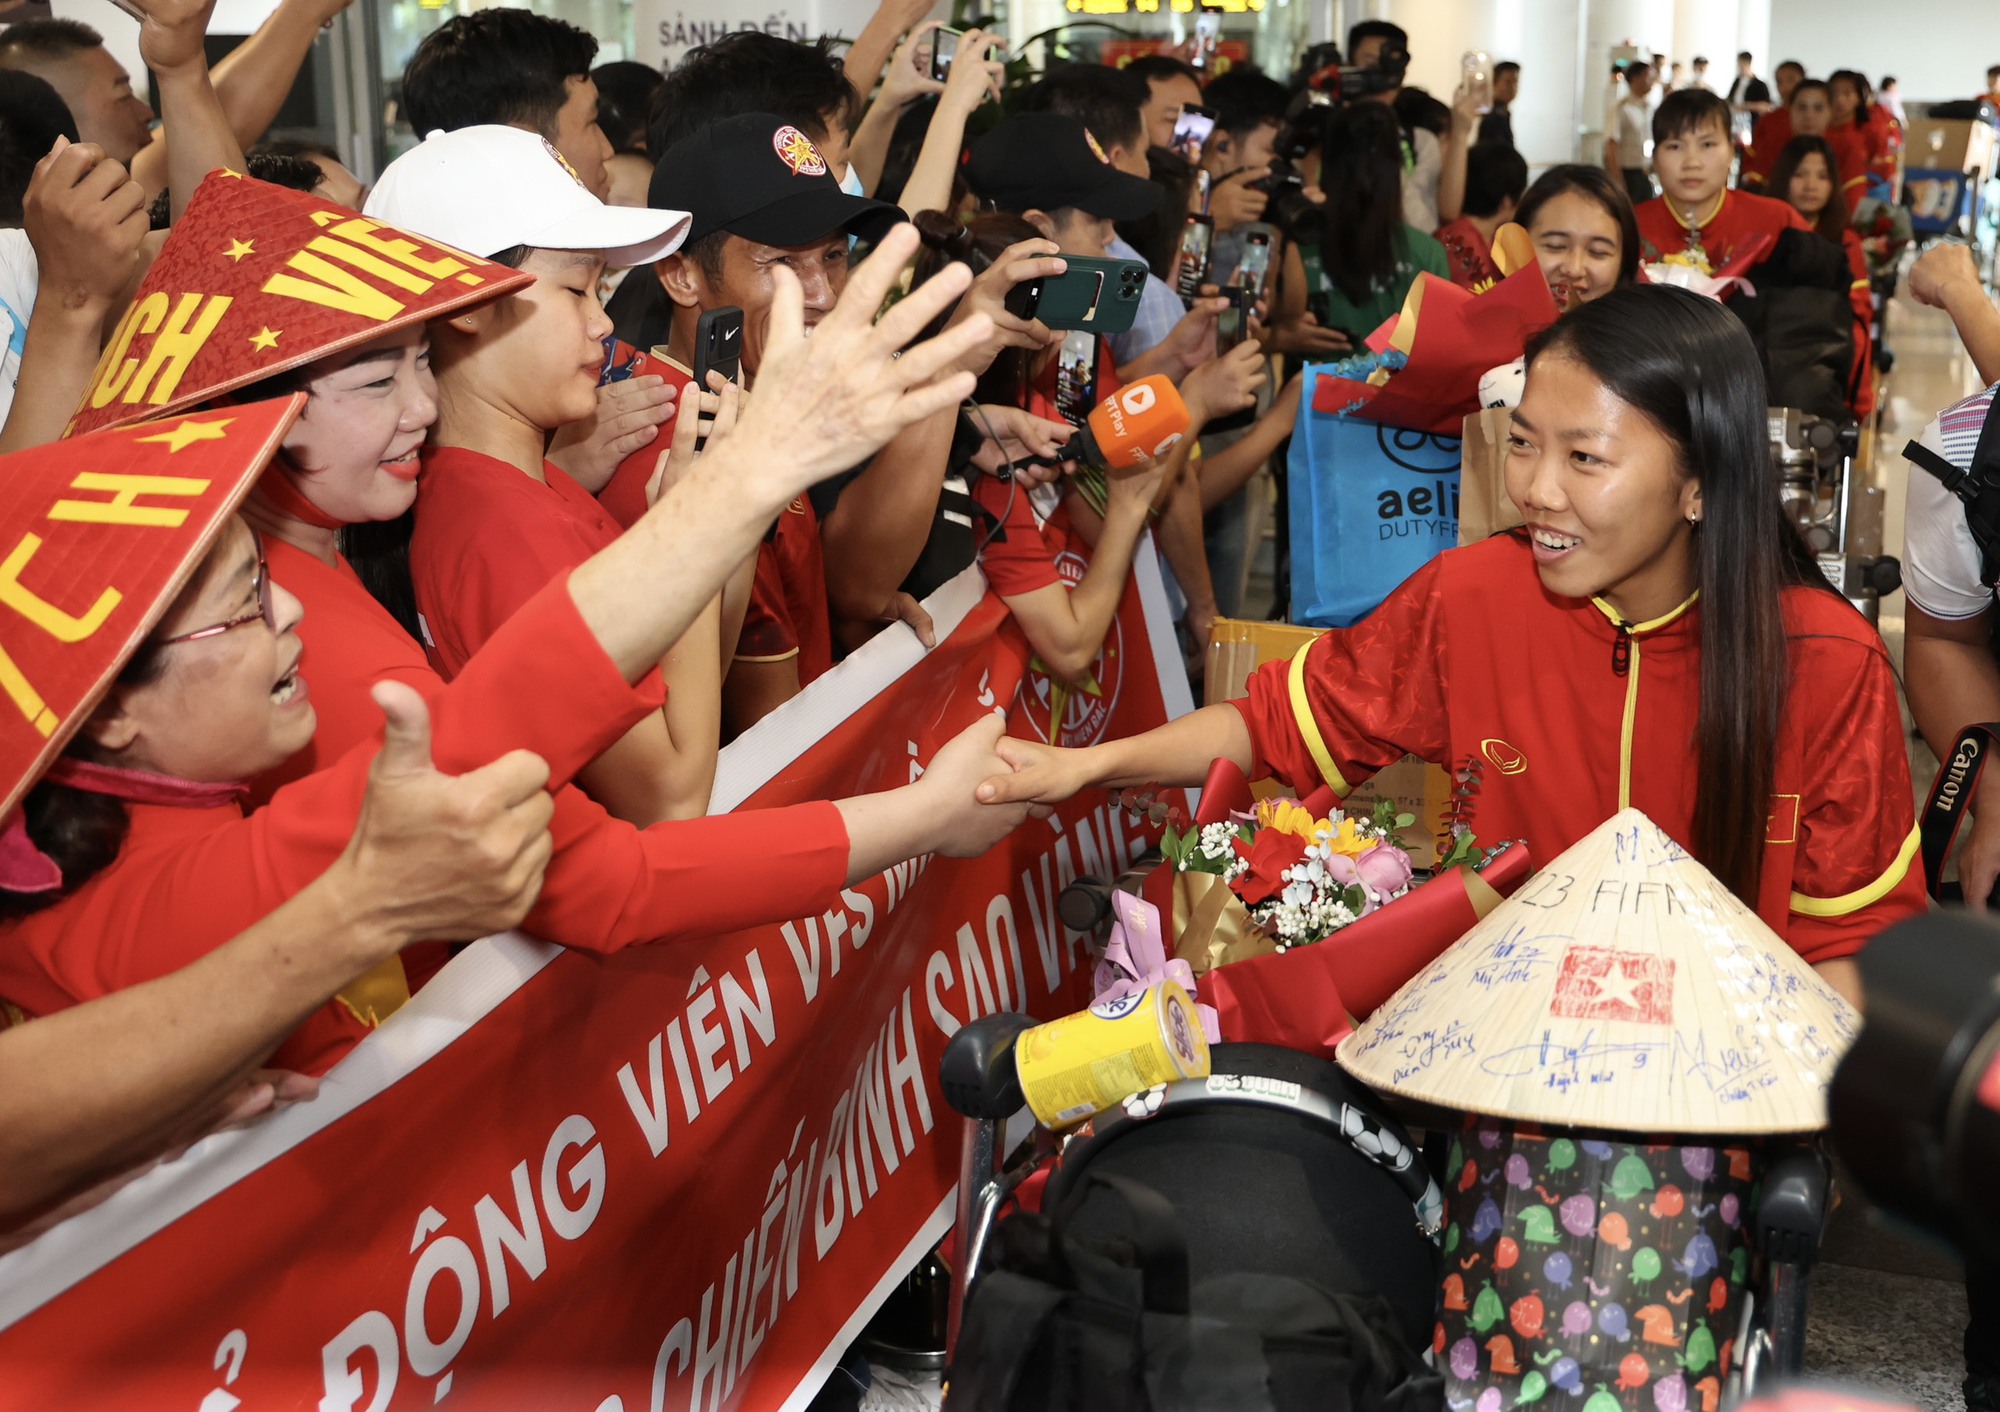 HLV Mai Đức Chung cùng nữ tuyển thủ rạng ngời trở về sau hành trình World Cup lịch sử - Ảnh 8.